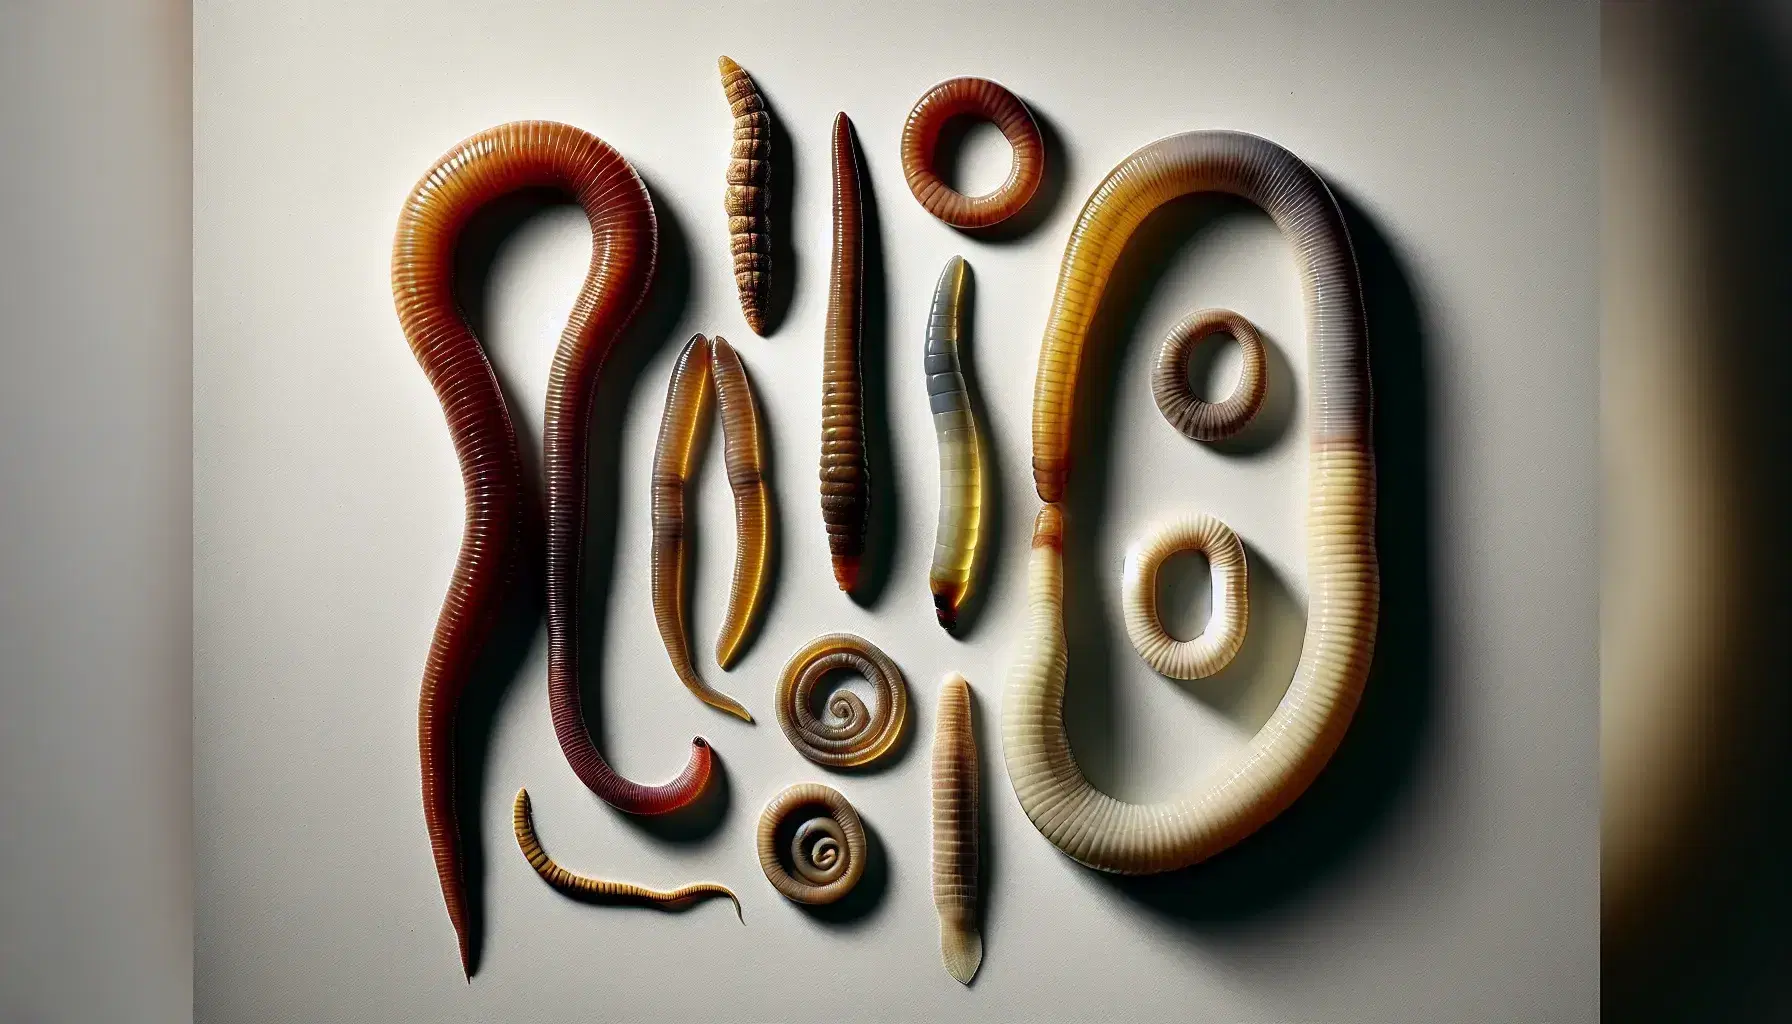 Variedad de gusanos reales de diferentes especies sobre fondo neutro destacando sus características morfológicas, incluyendo un anélido segmentado, un platelminto aplanado y un nematodo cilíndrico y translúcido.